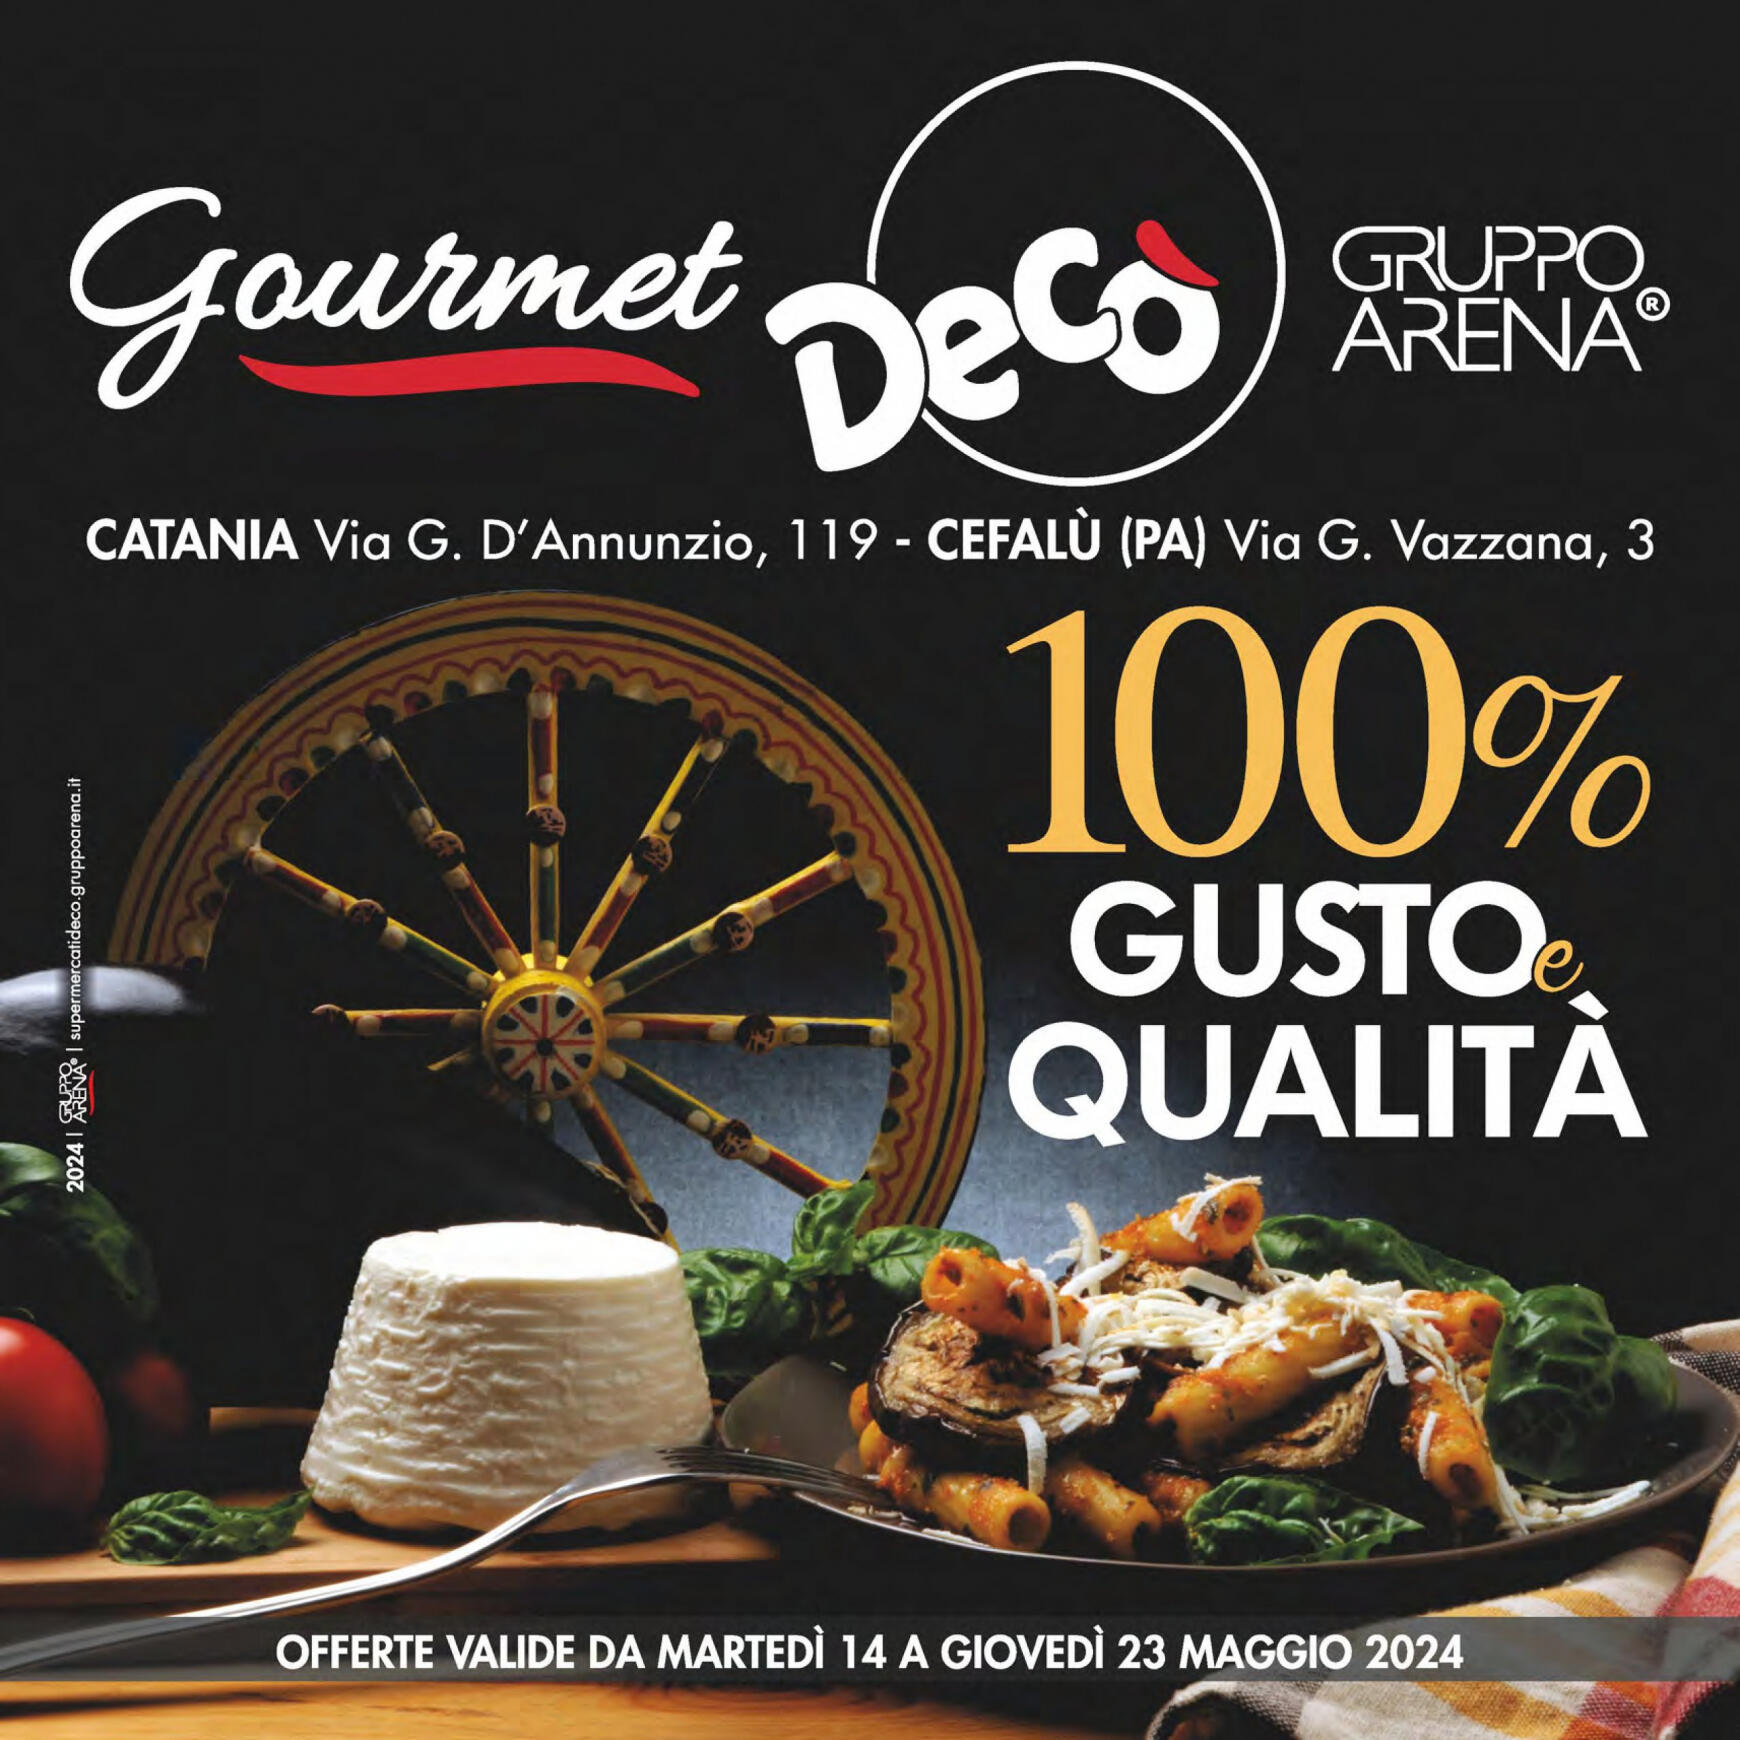 deco - Nuovo volantino Decò - Gourmet 14.05. - 23.05. - page: 1